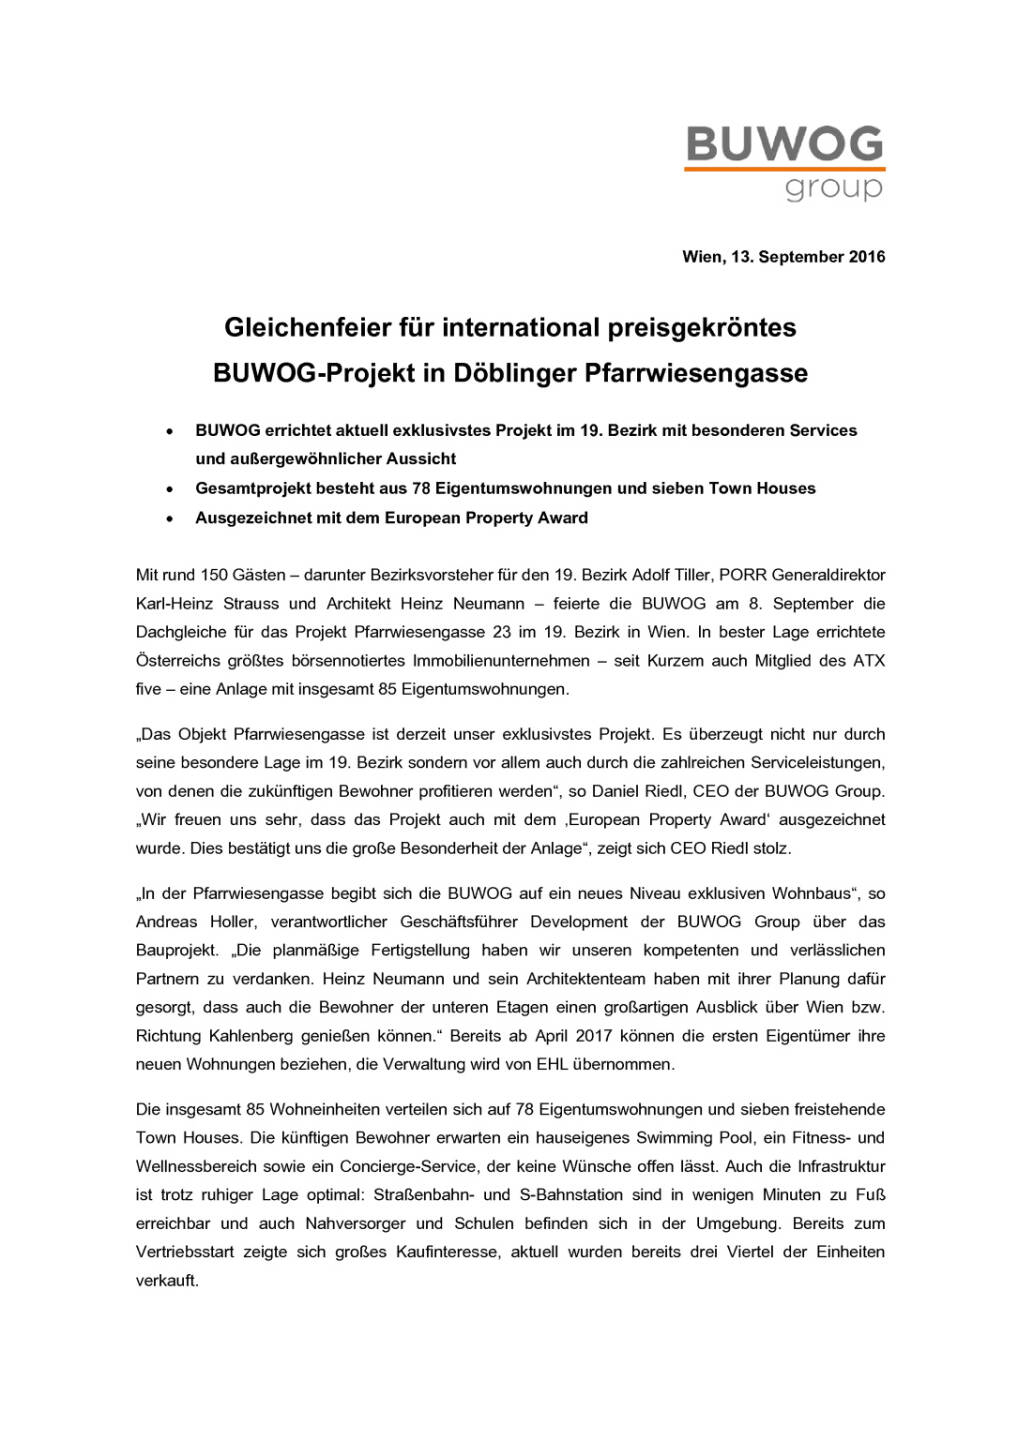 Buwog Gleichenfeier Wien Döbling, Seite 1/2, komplettes Dokument unter http://boerse-social.com/static/uploads/file_1767_buwog_gleichenfeier_wien_dobling.pdf